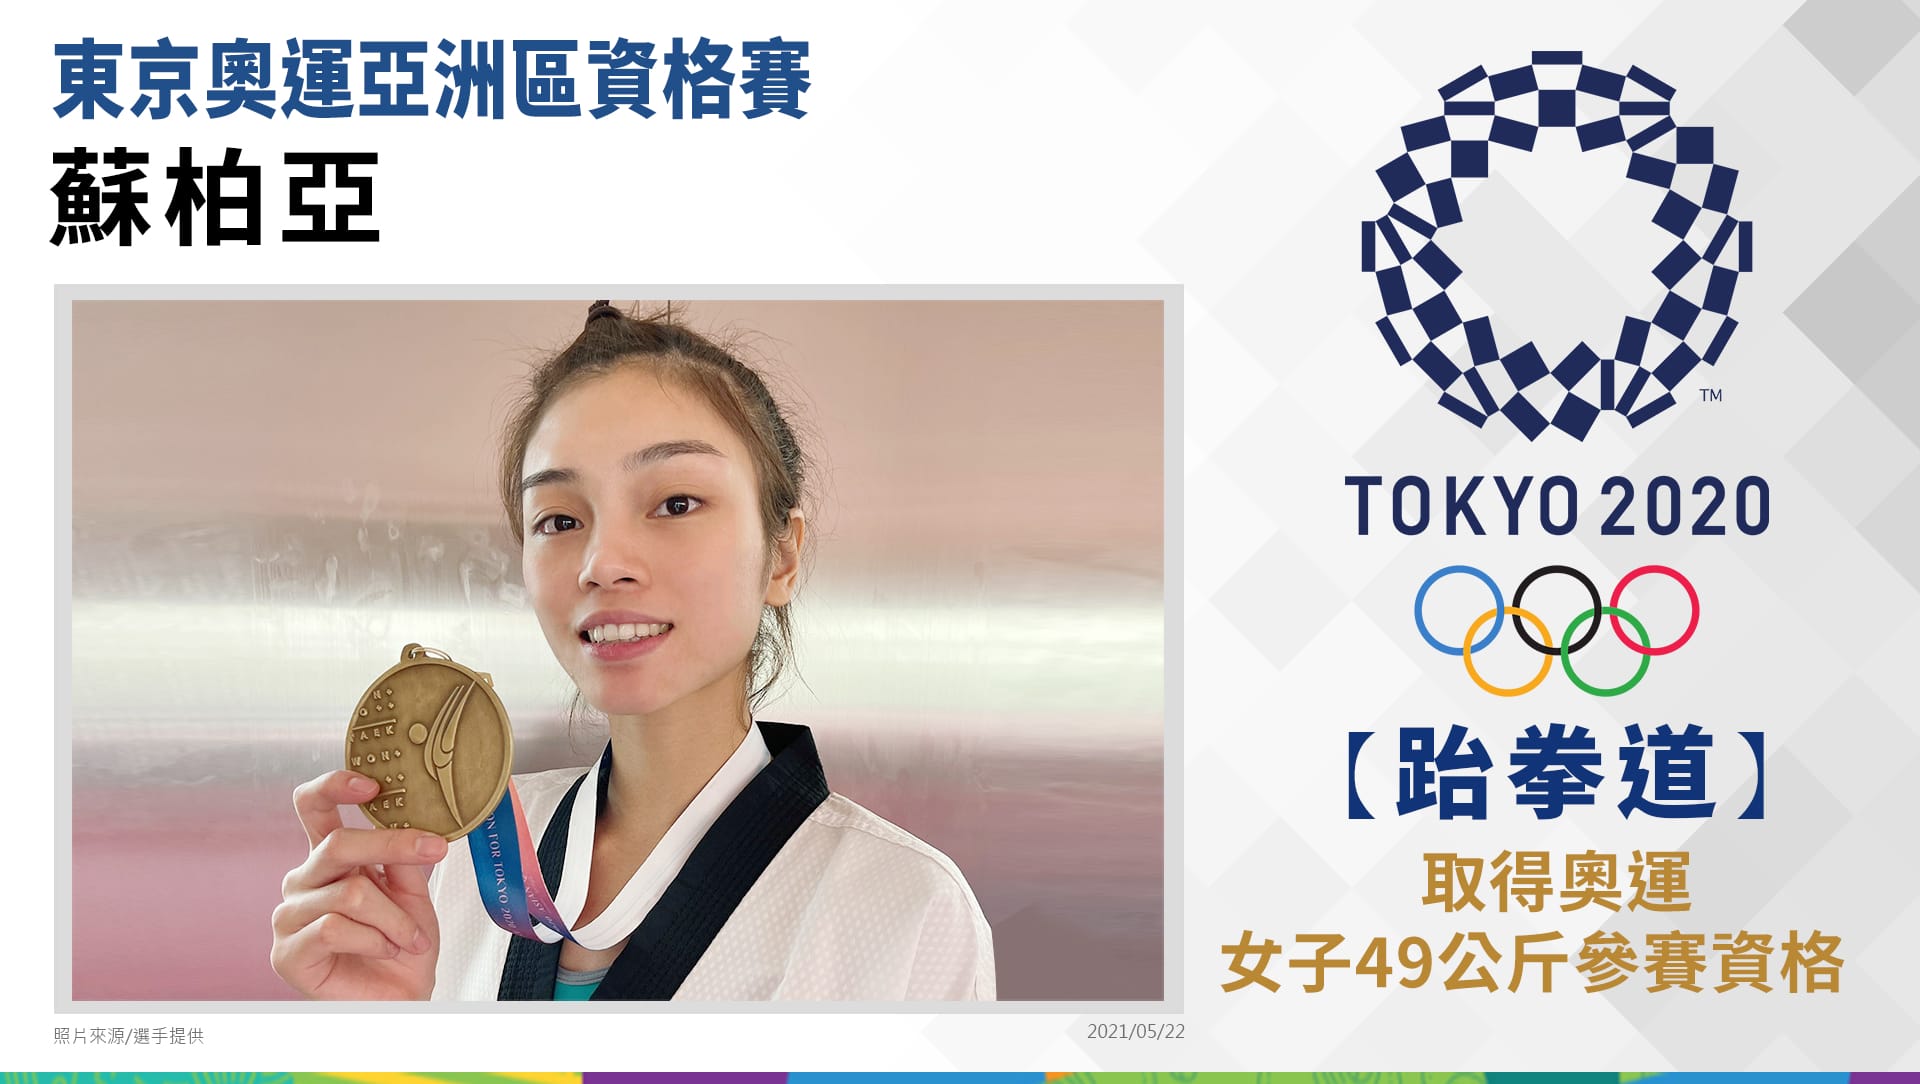 蘇柏亞取得奧運女子49公斤參賽資格 